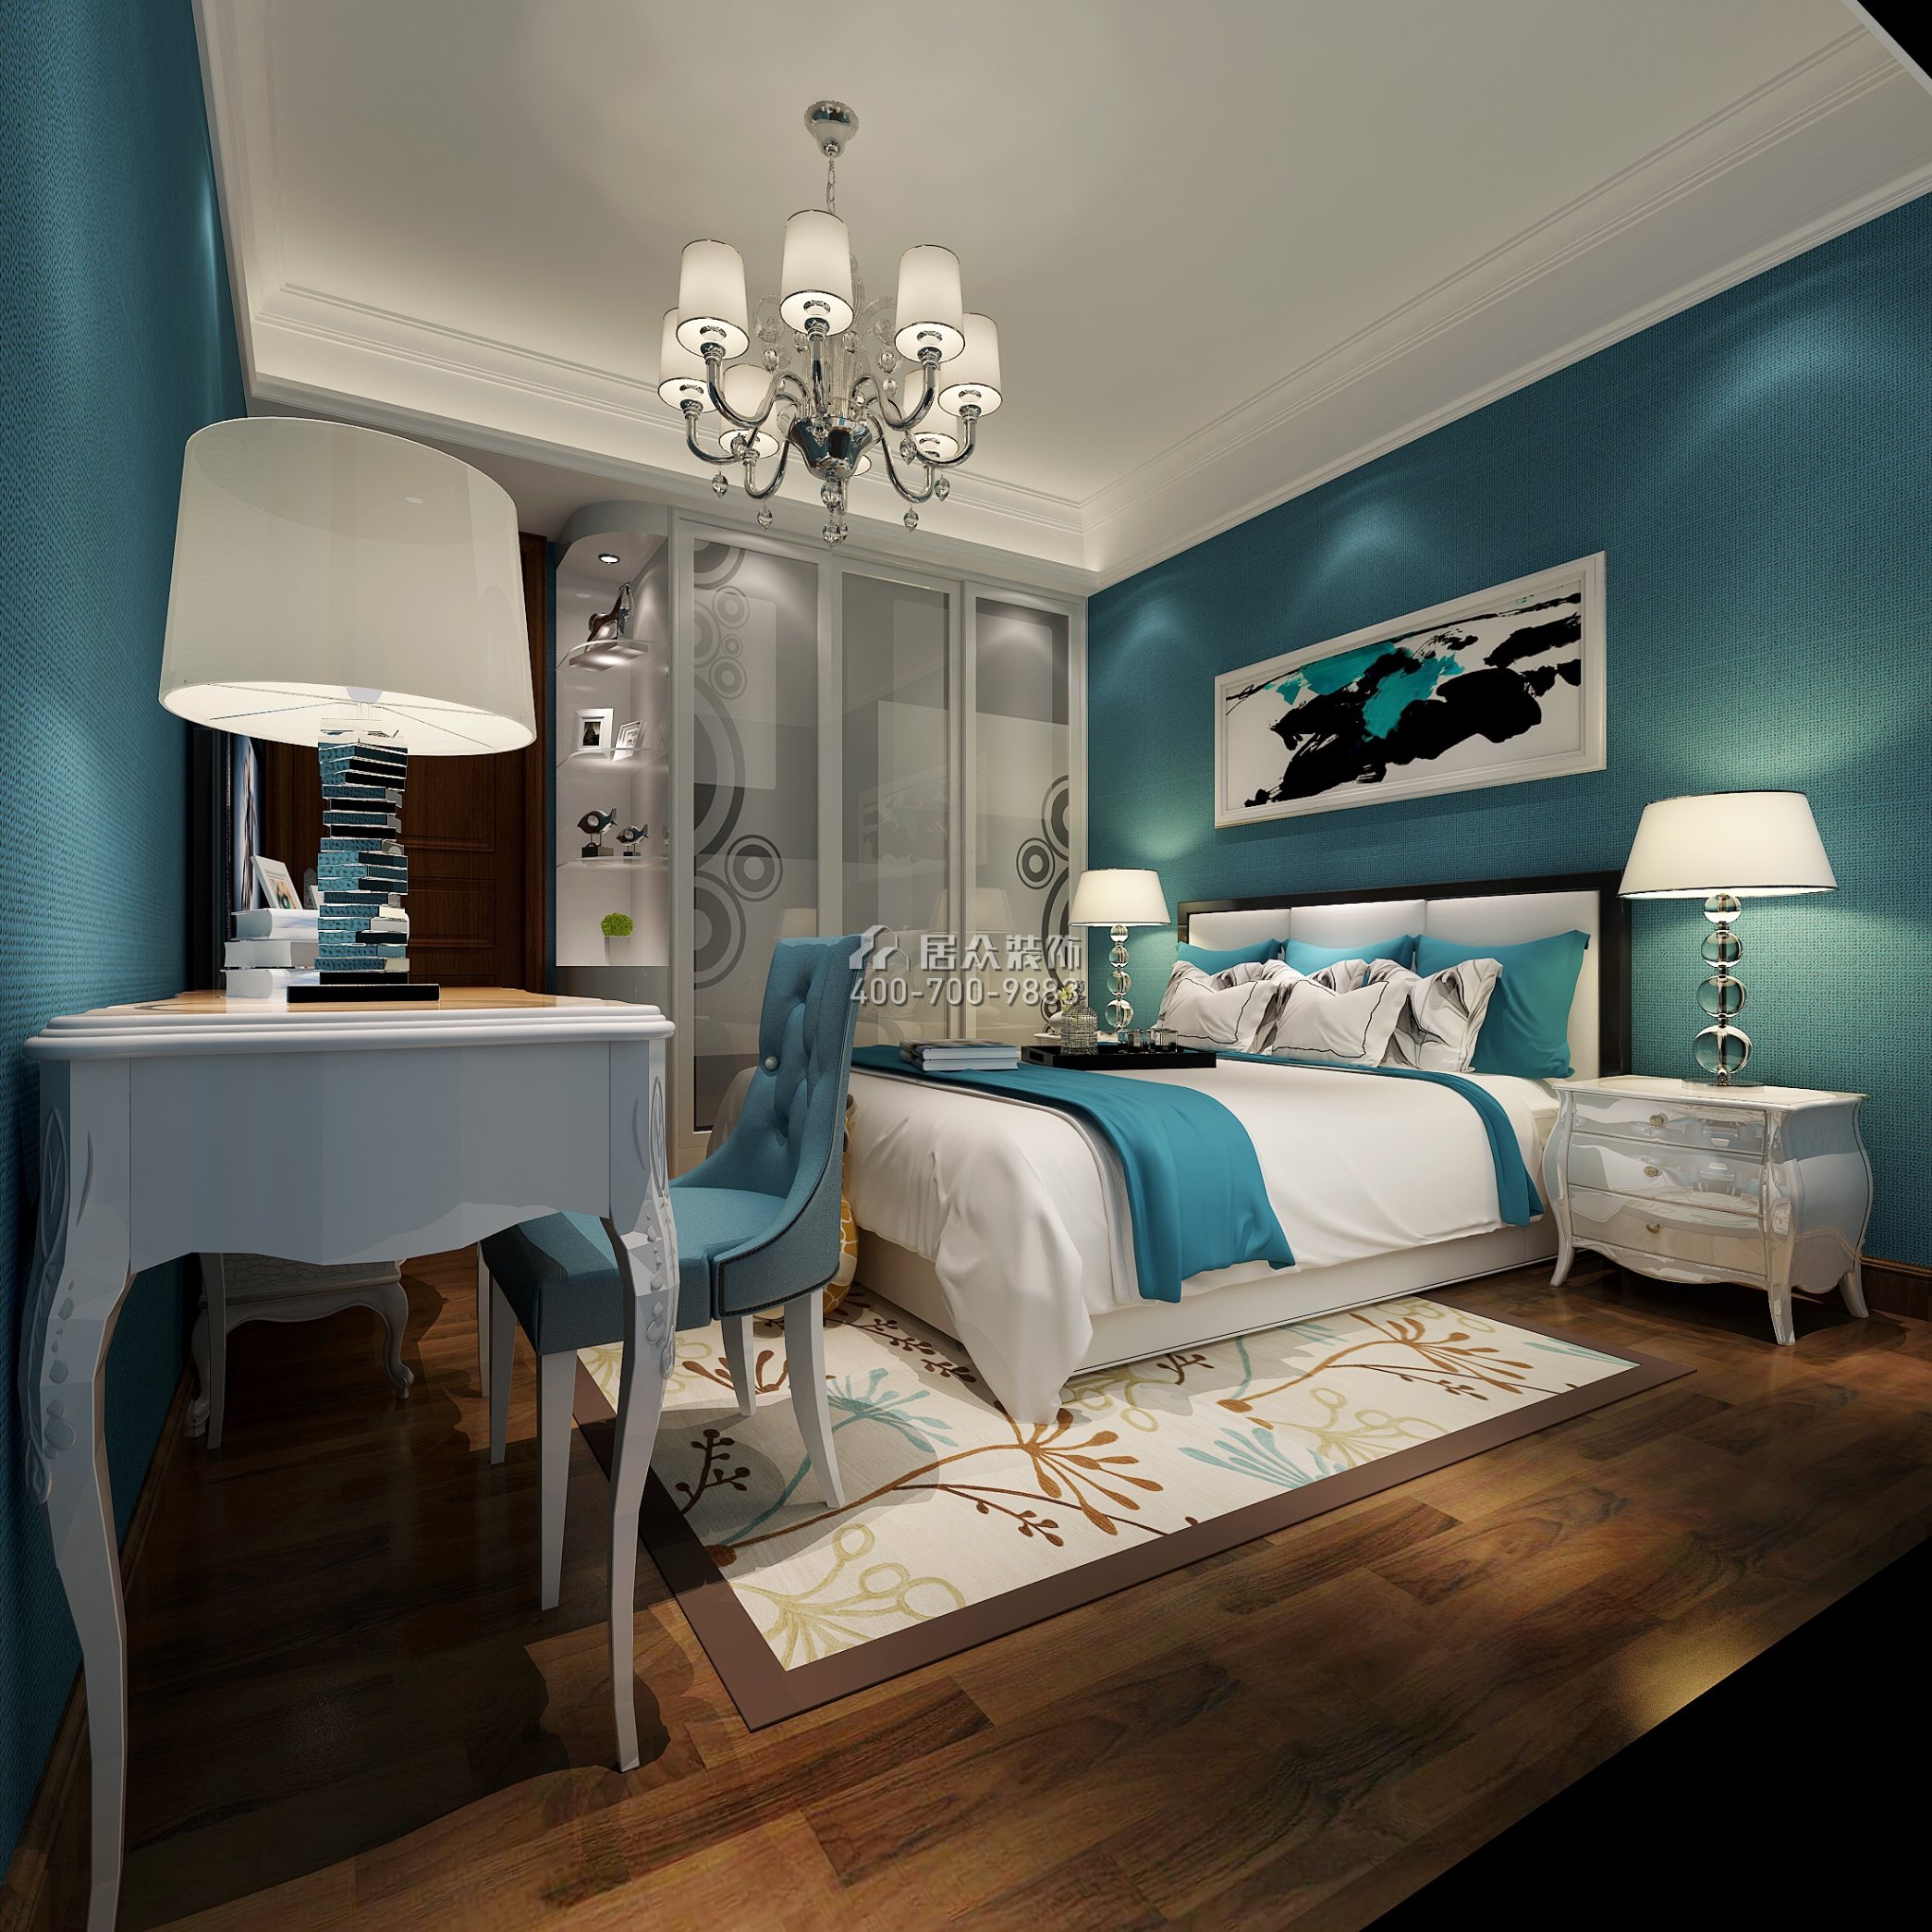 雅居樂花冠集192平方米歐式風格平層戶型臥室裝修效果圖